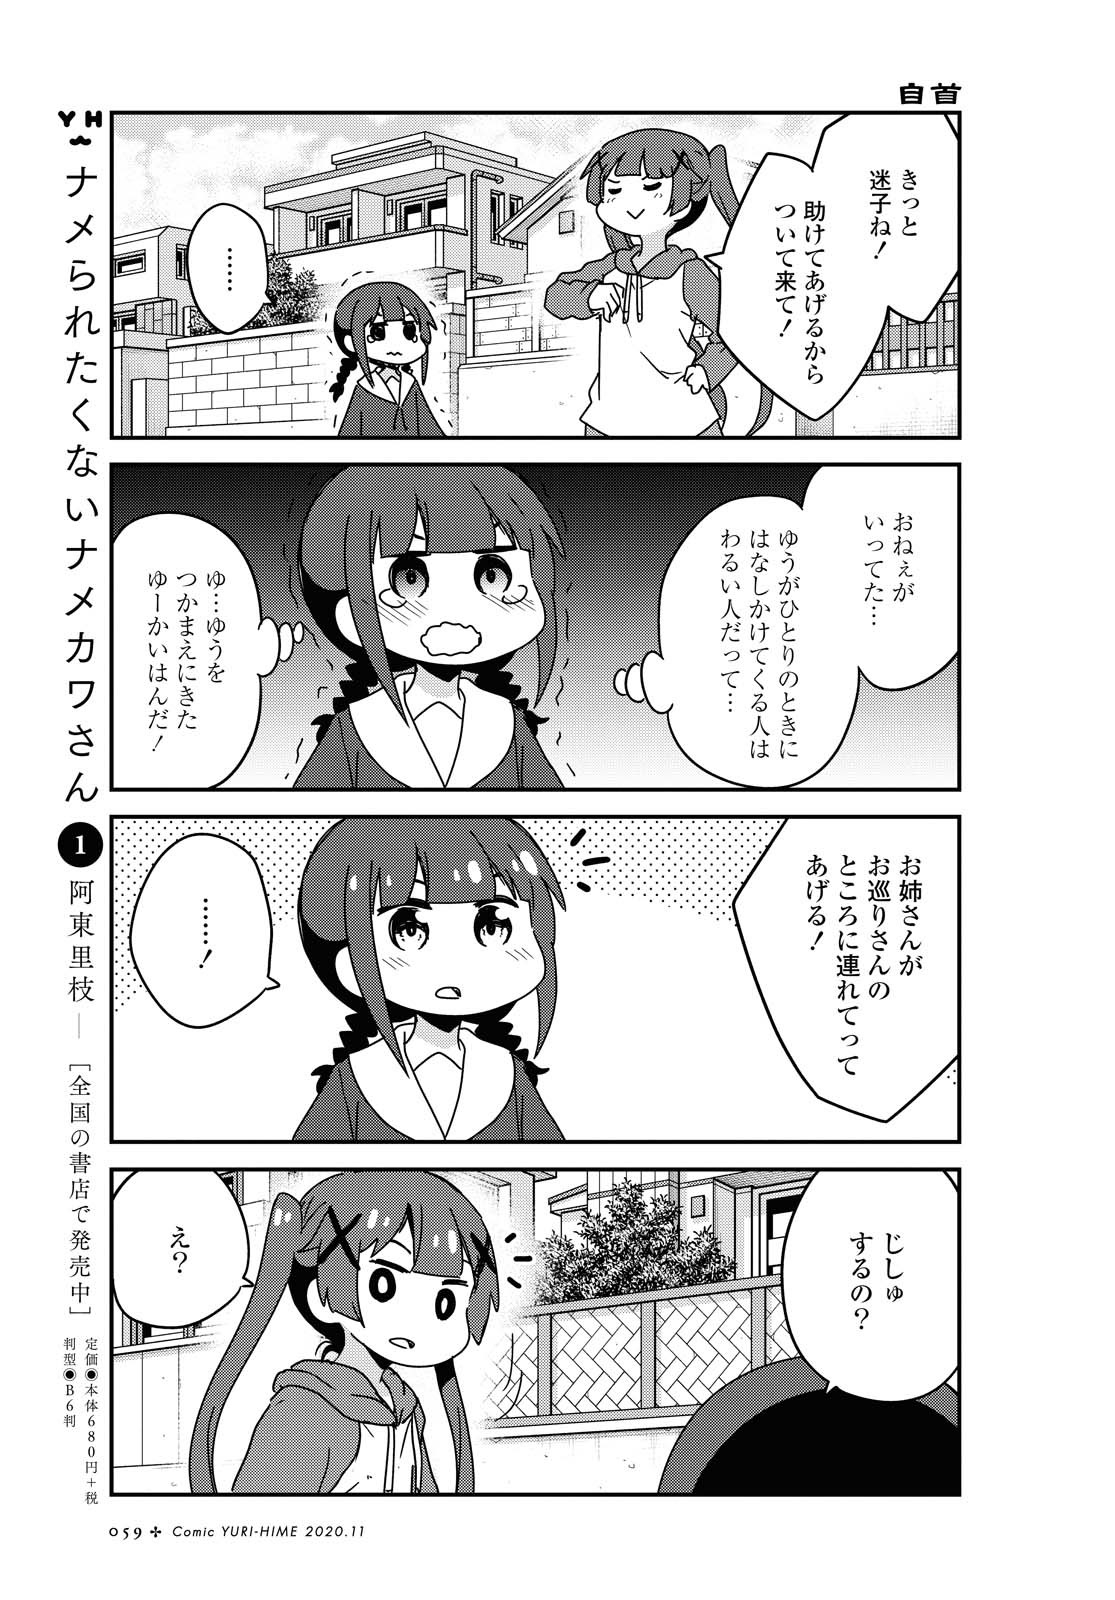 Watashi ni Tenshi ga Maiorita! - Chapter 71 - Page 5